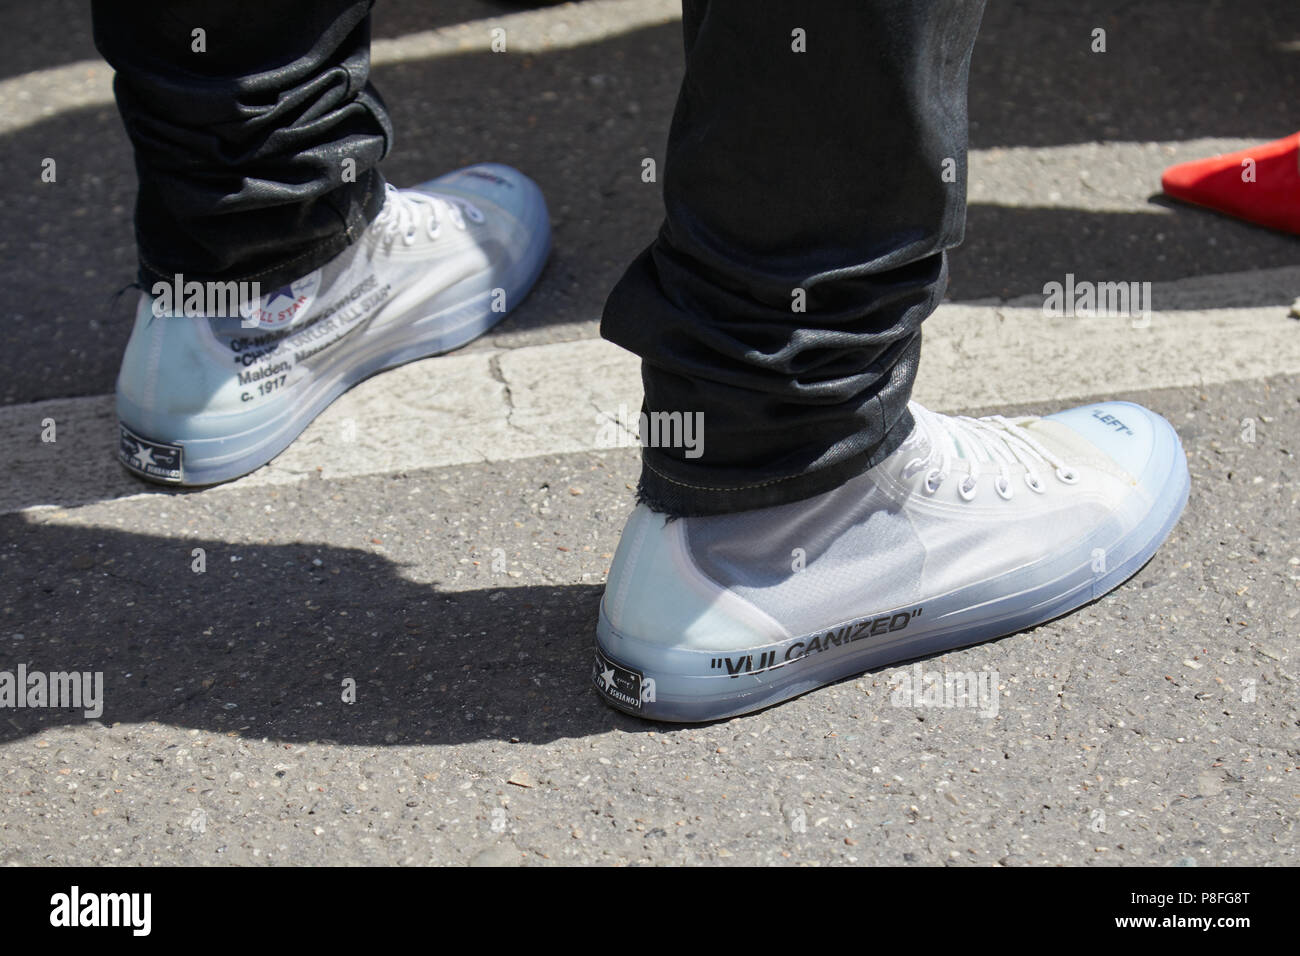 Off white shoes e imágenes de alta resolución - Alamy